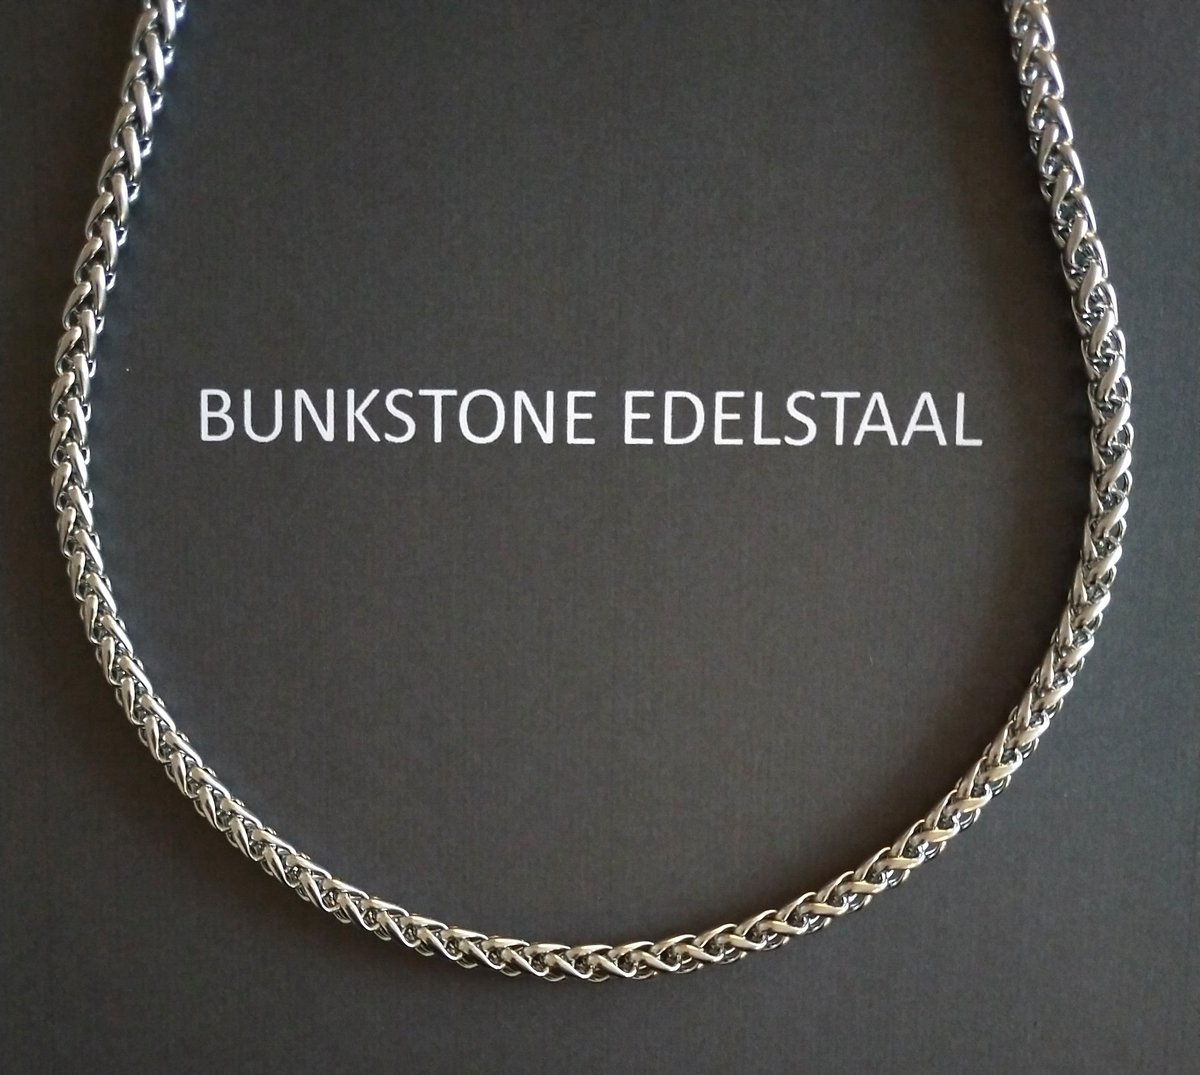 Bunkstone - Roestvrij staal -Edelstaal - Ketting - Vossenstaart schakel - 50 cm - 5 mm - Karabijn sluiting